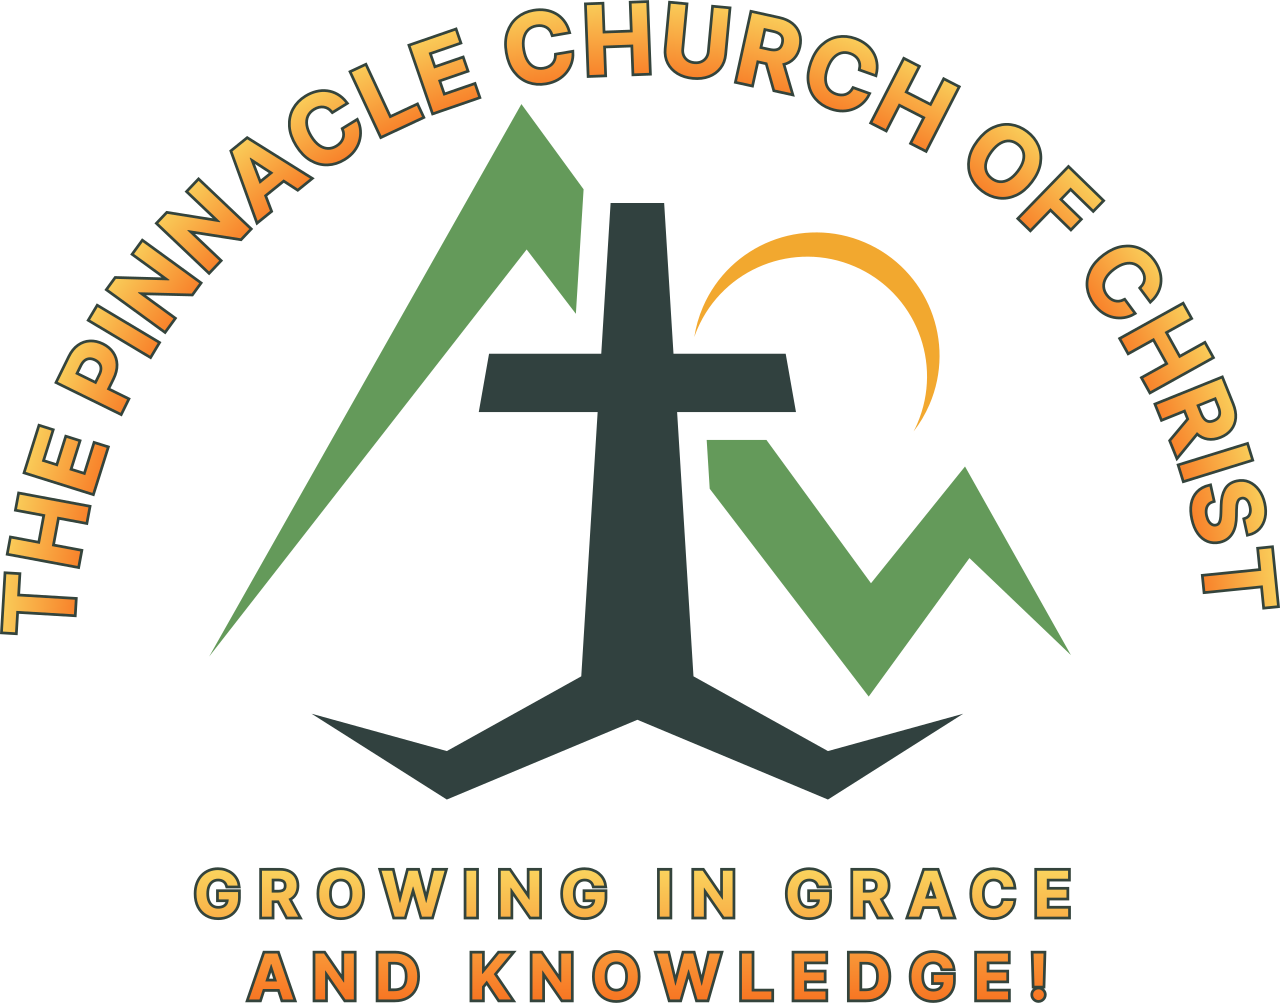 THE PINNACLE CHURCH OF CHRIST 's logo